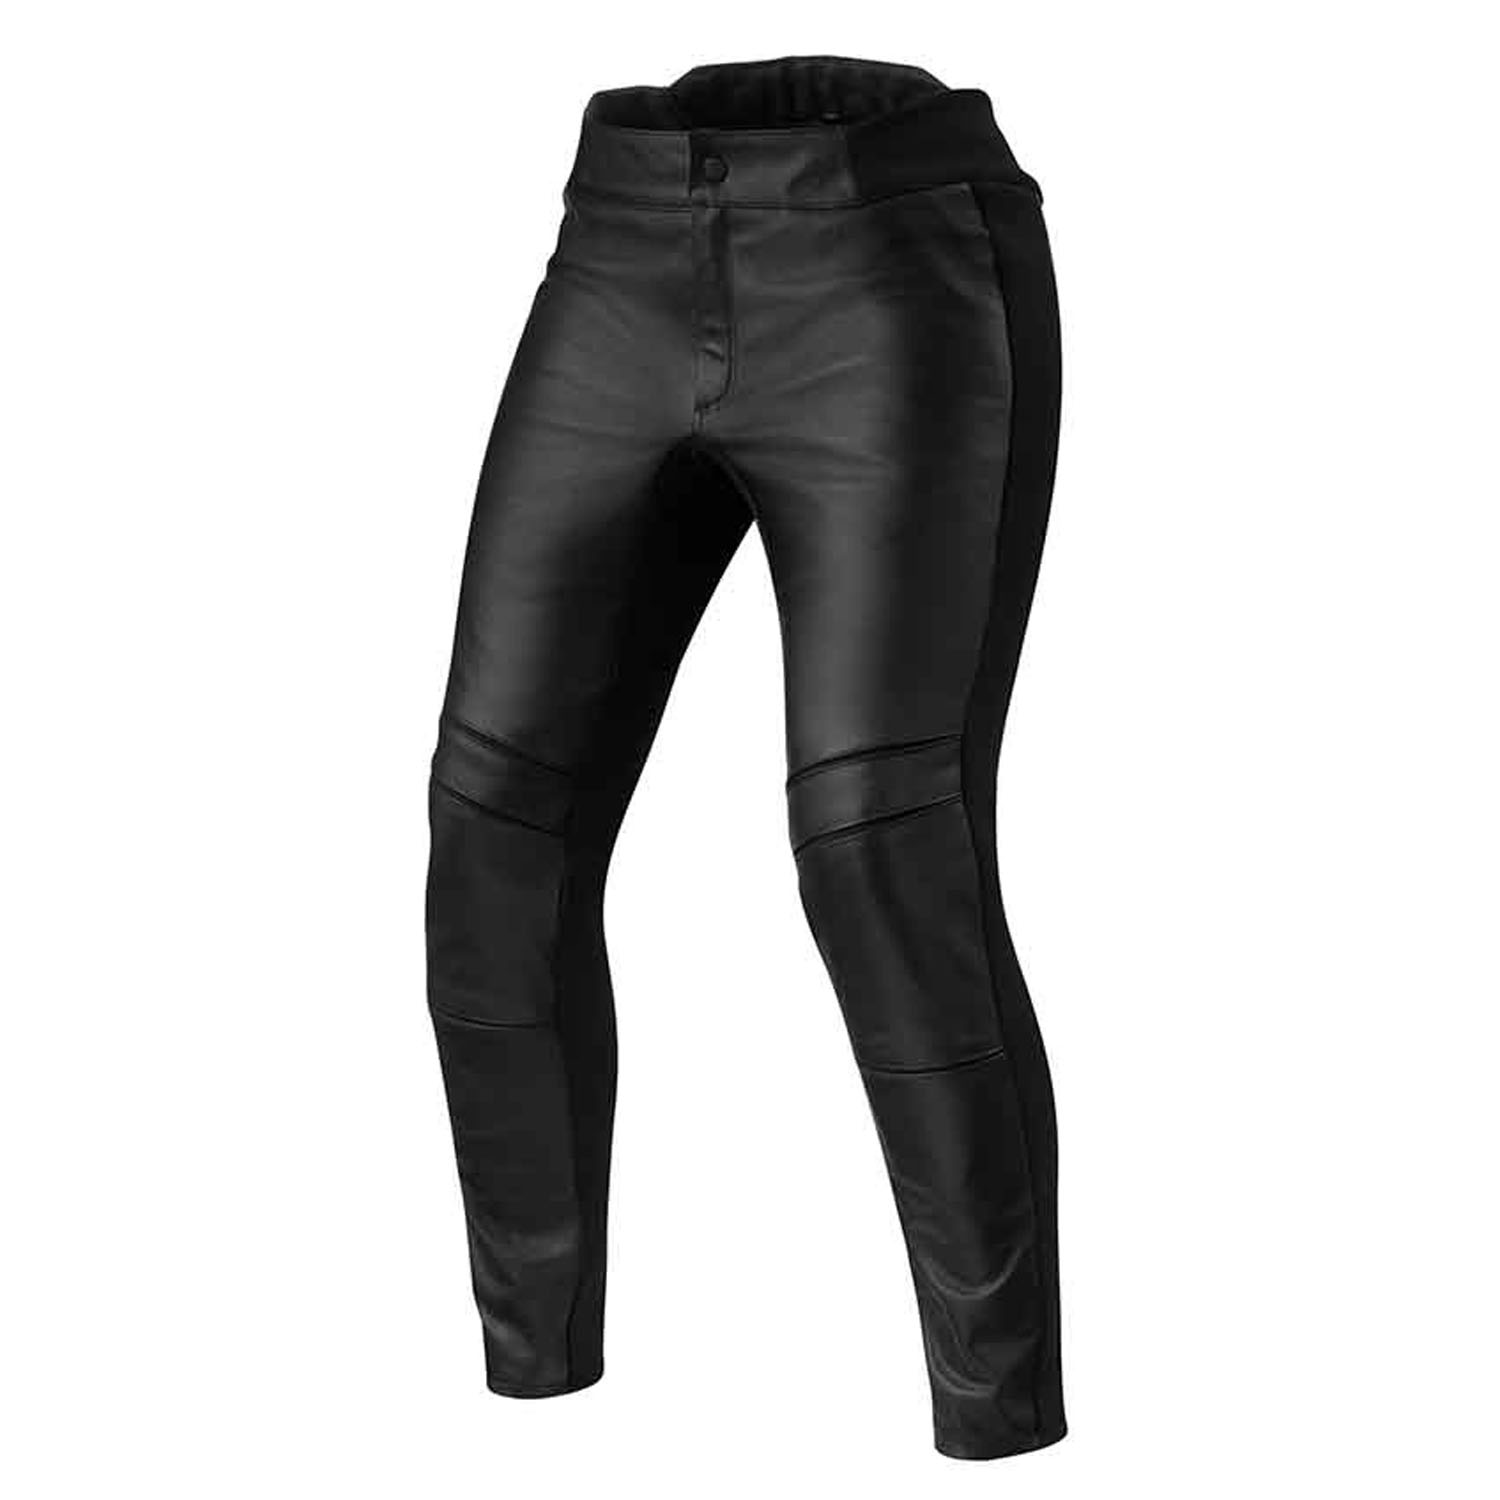 Image of REV'IT! Maci Ladies Black Standard Motorcycle Pants Talla 36